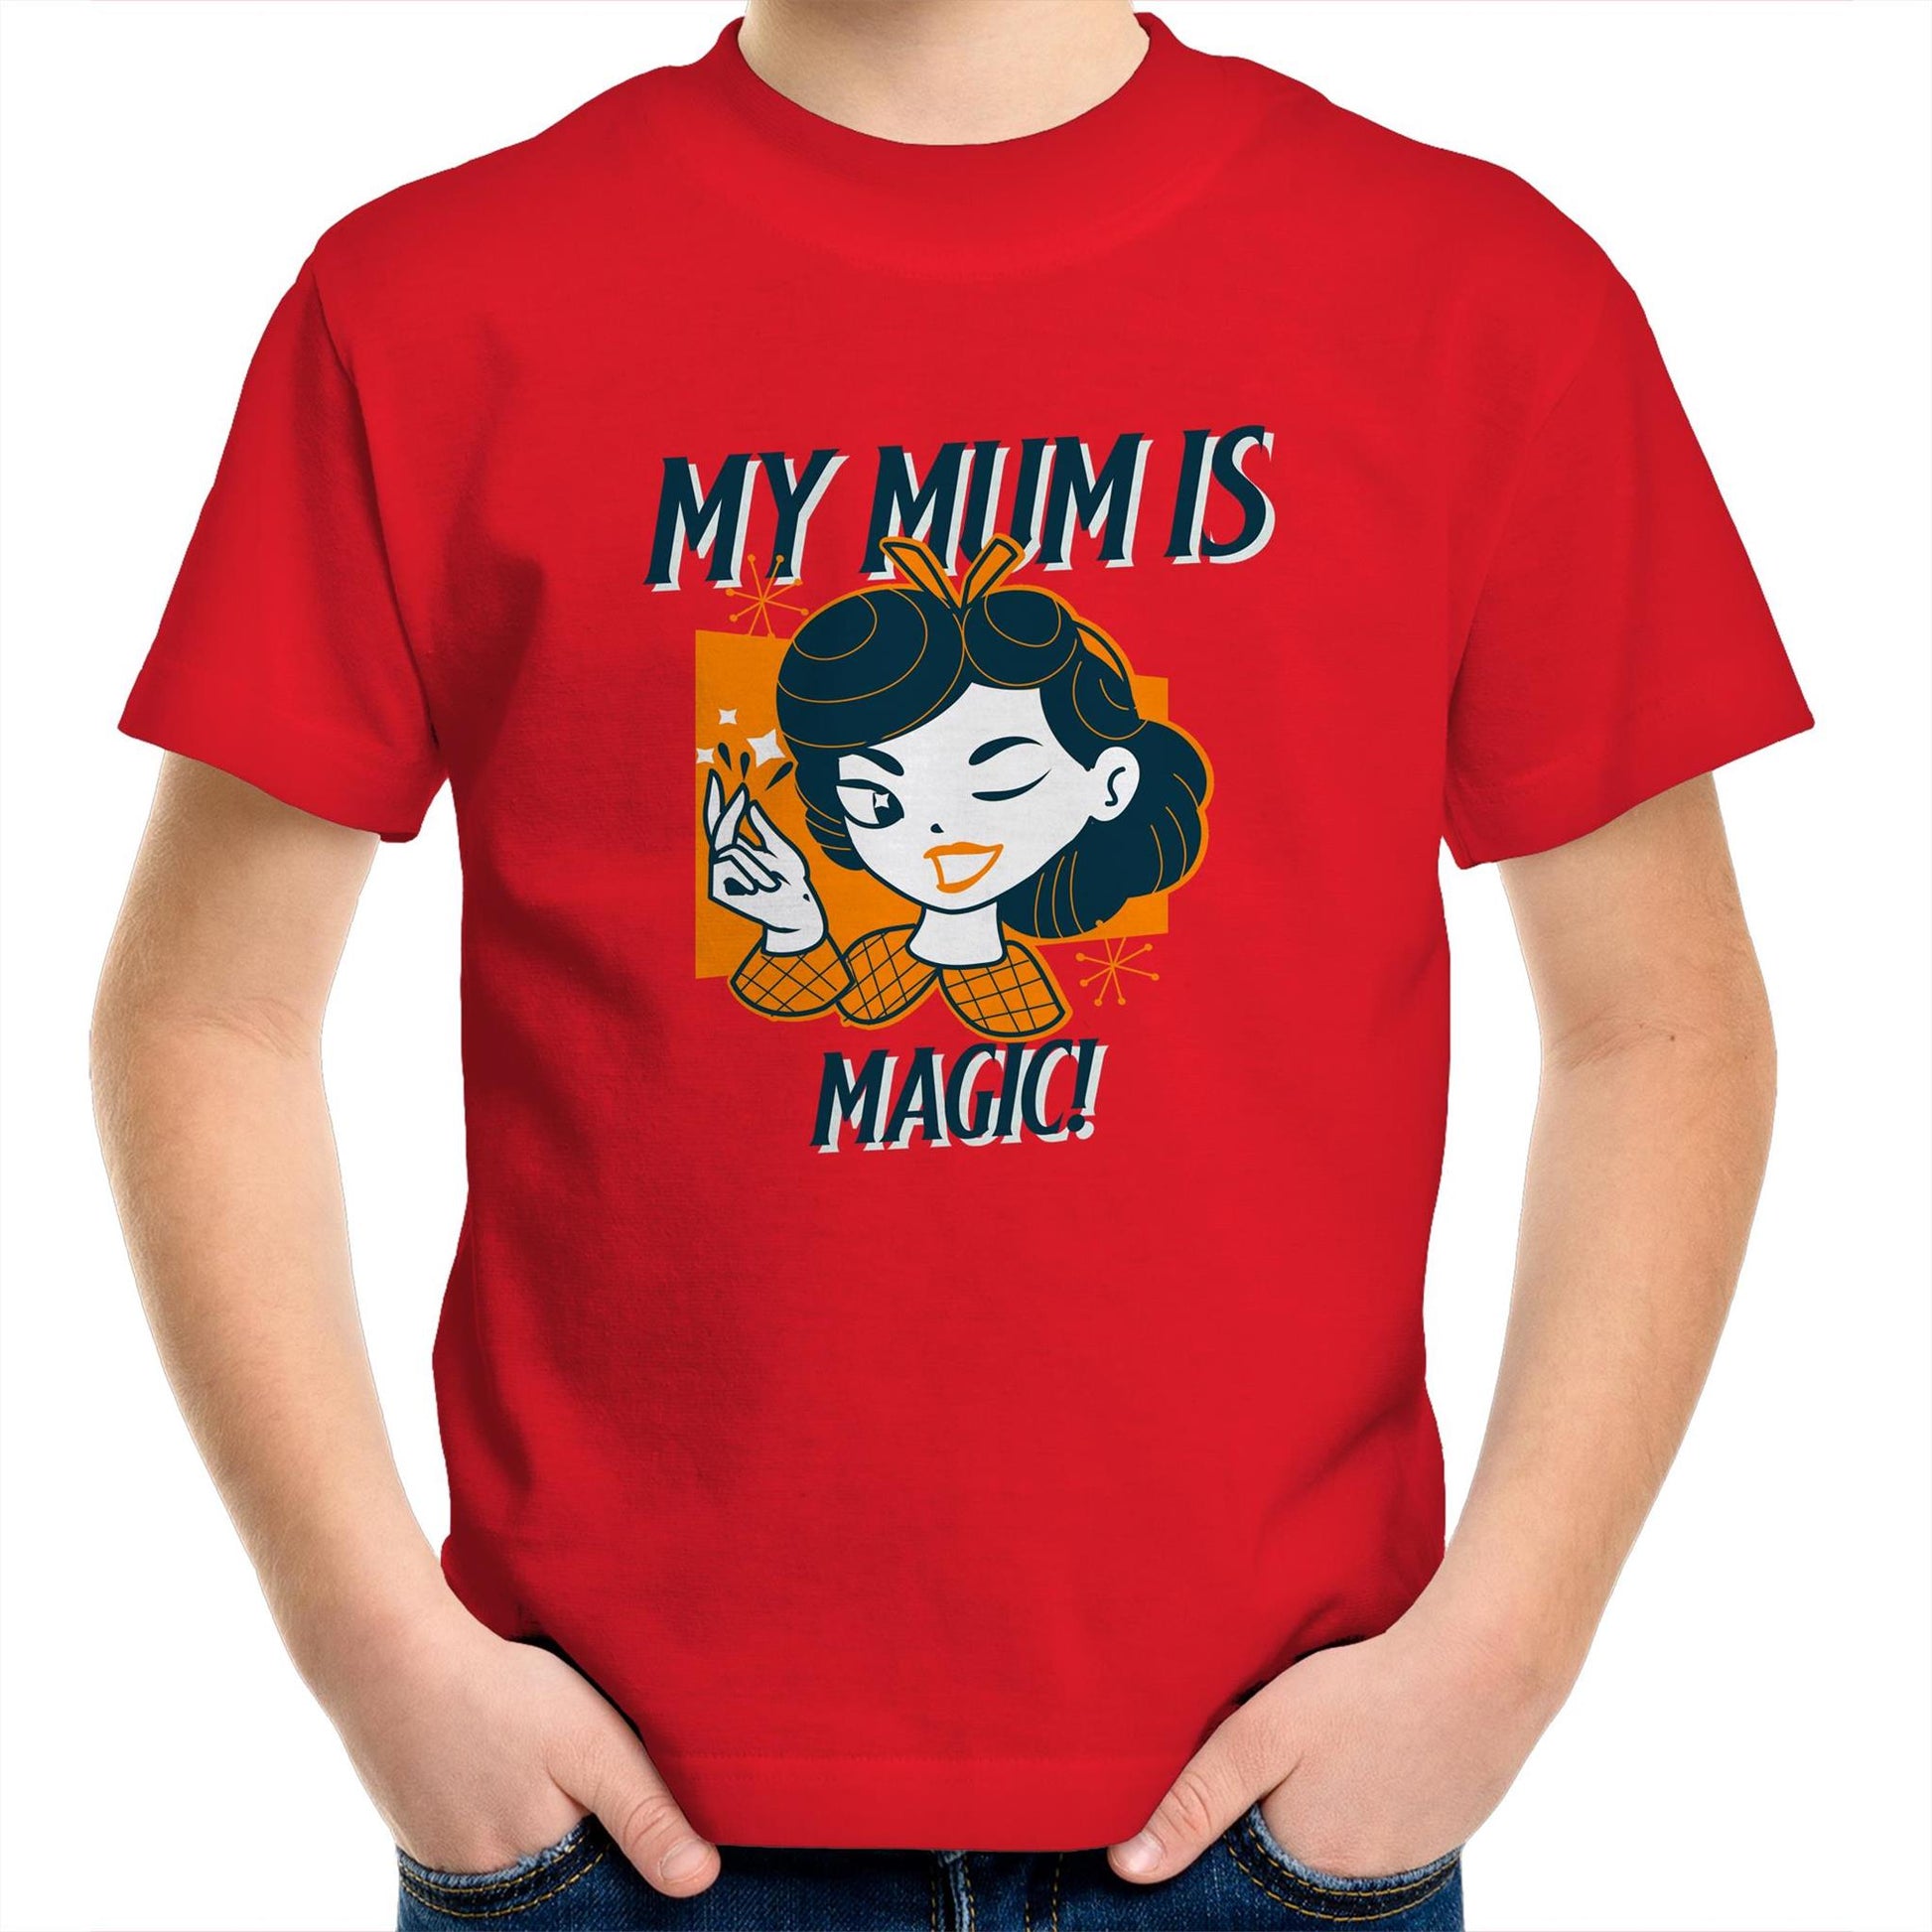 My Mum Is Magic - Kids Youth Crew T-Shirt Red Kids Youth T-shirt Mum Retro